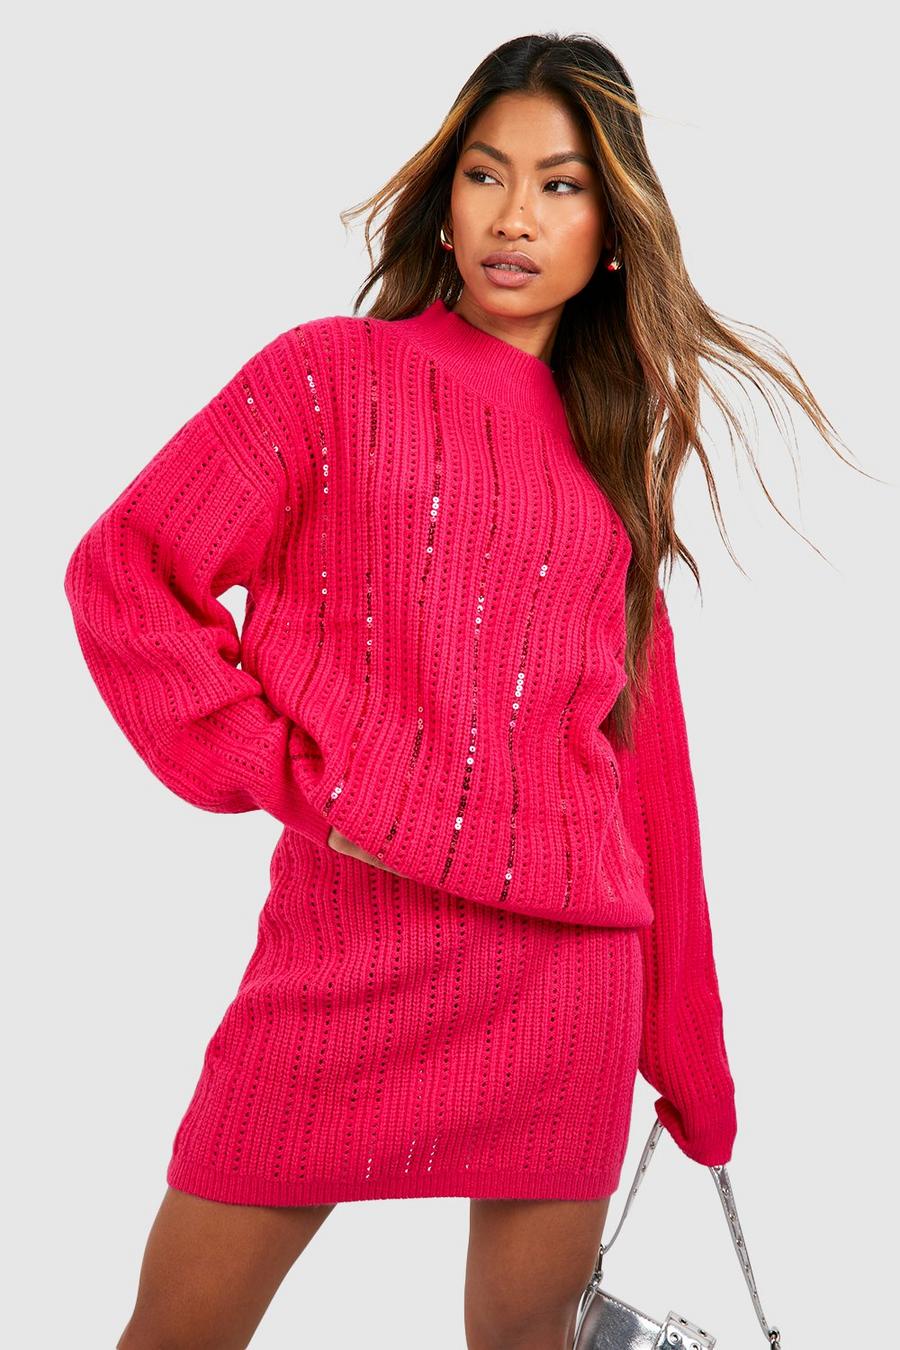 Hochgeschlossener Pailletten-Pullover, Hot pink